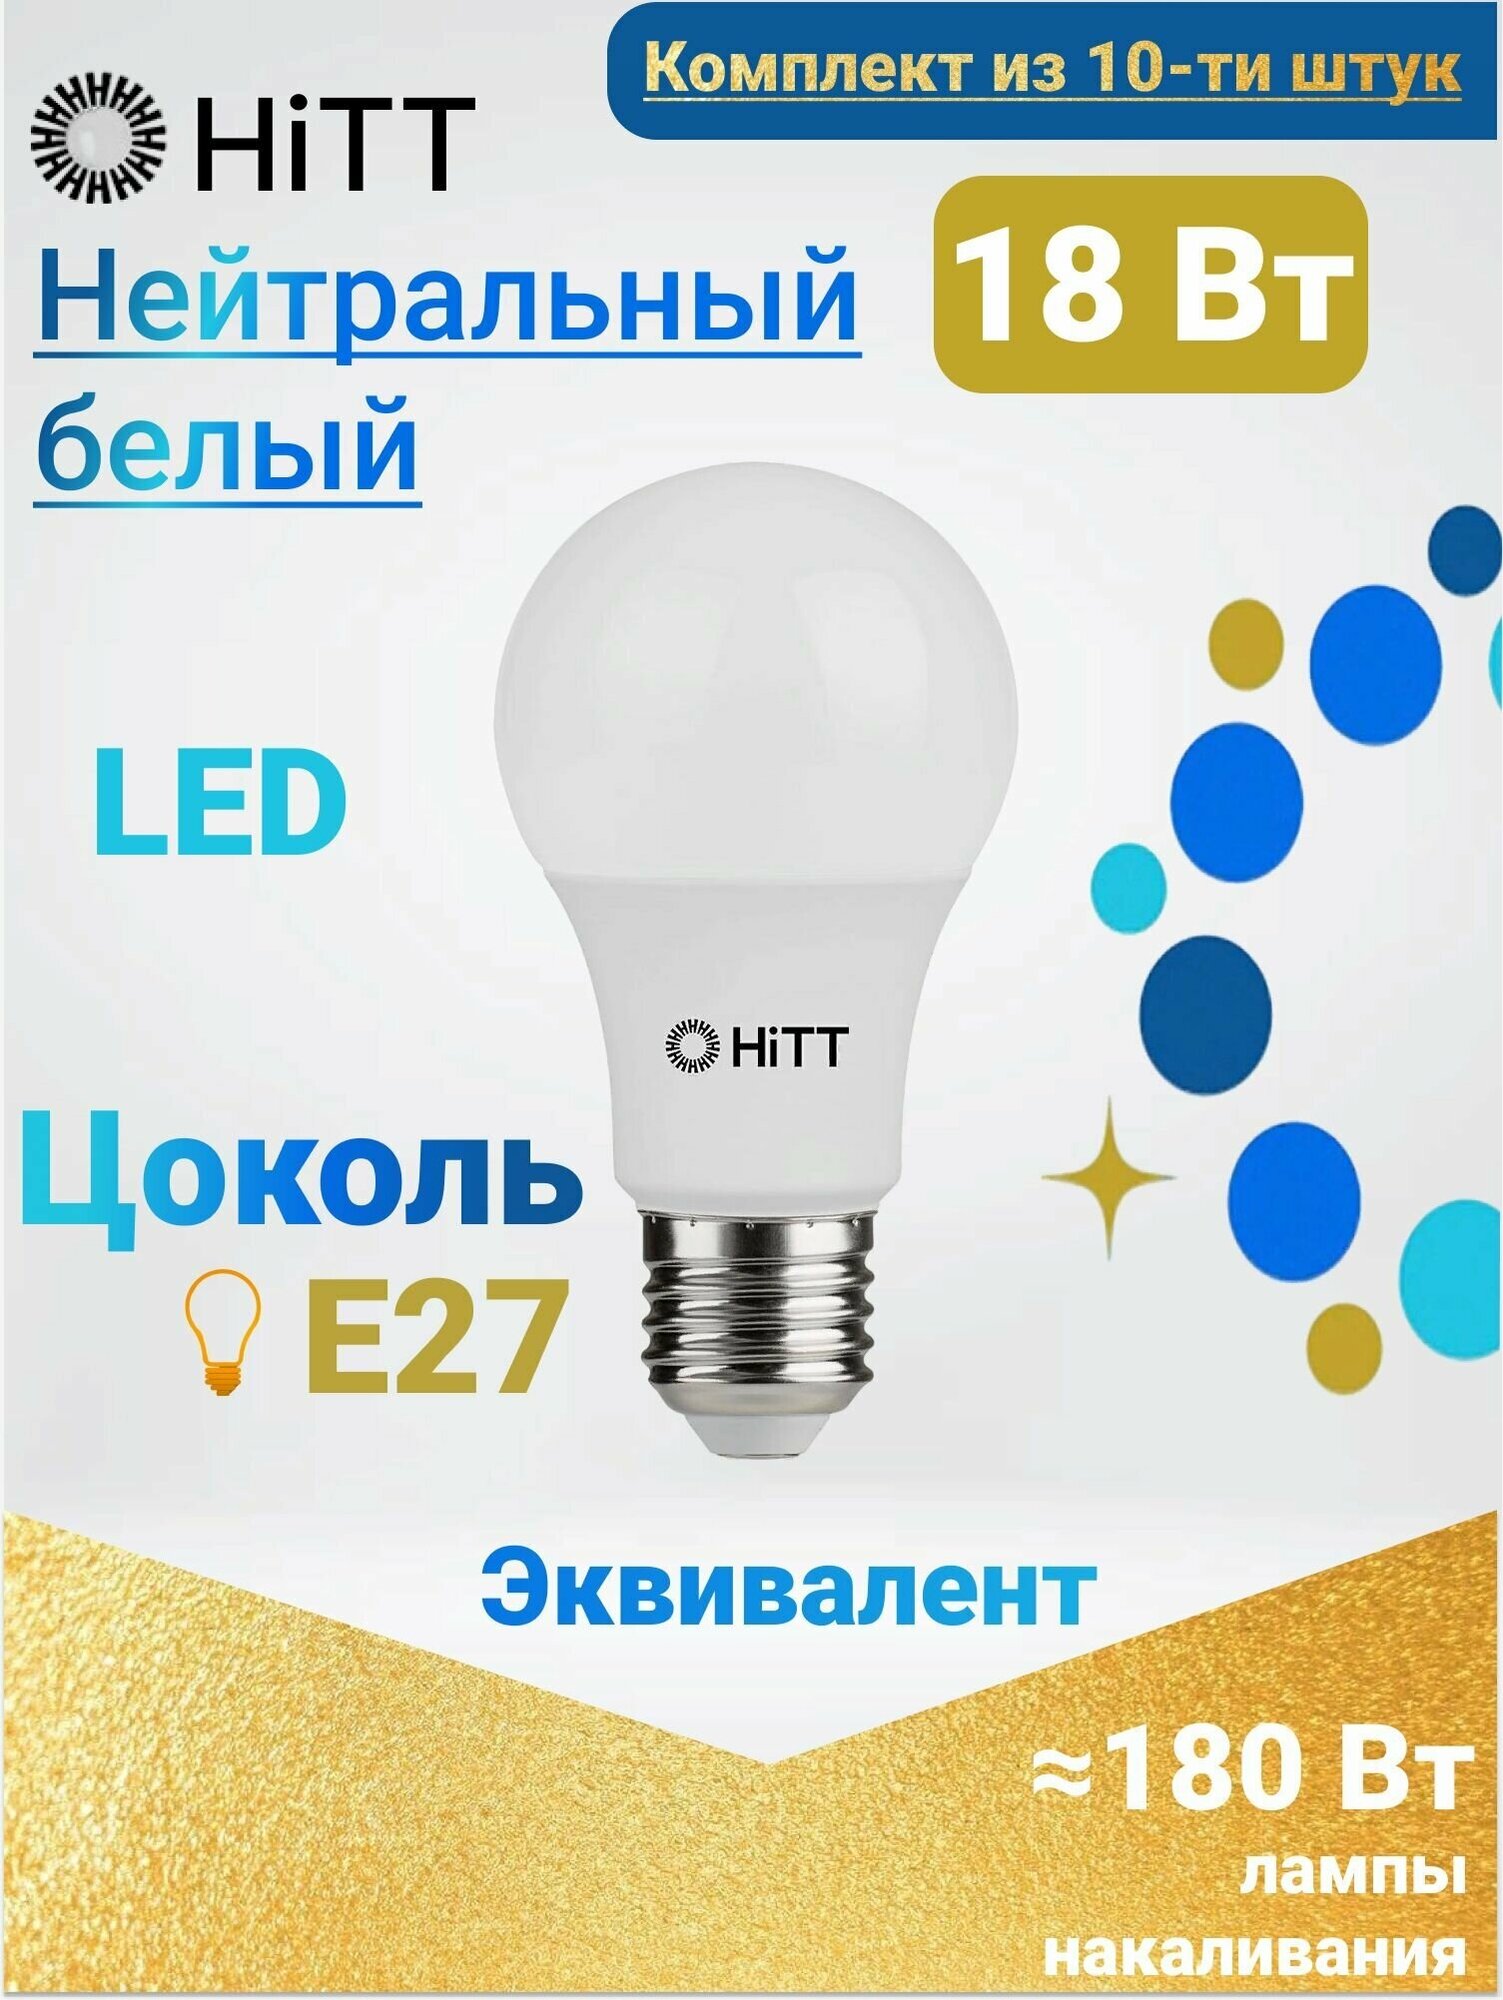 HiTT Энергоэффективная светодиодная лампа, Комплект из 10-ти штук, 18Вт E27 4000к